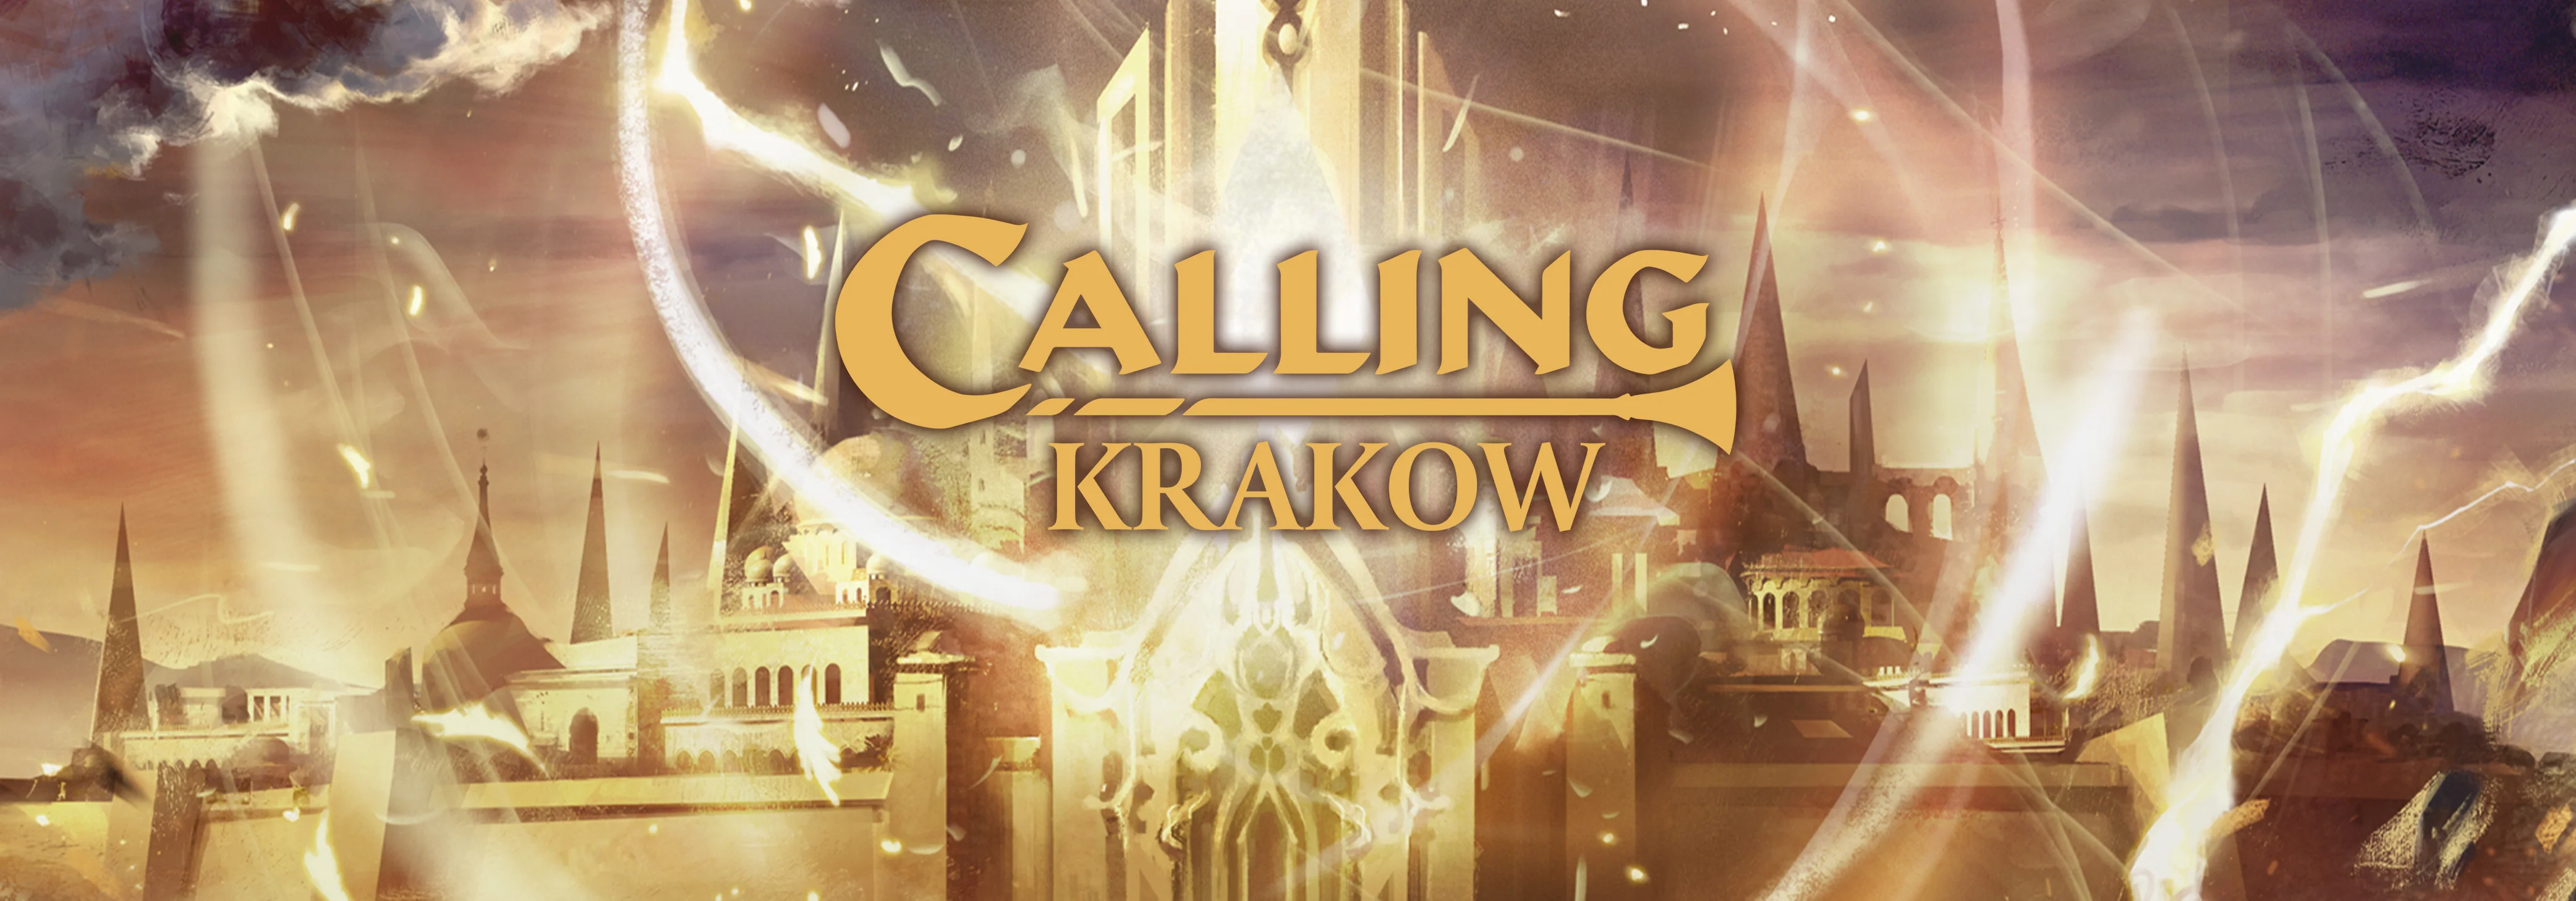 Calling Krakow.jpg